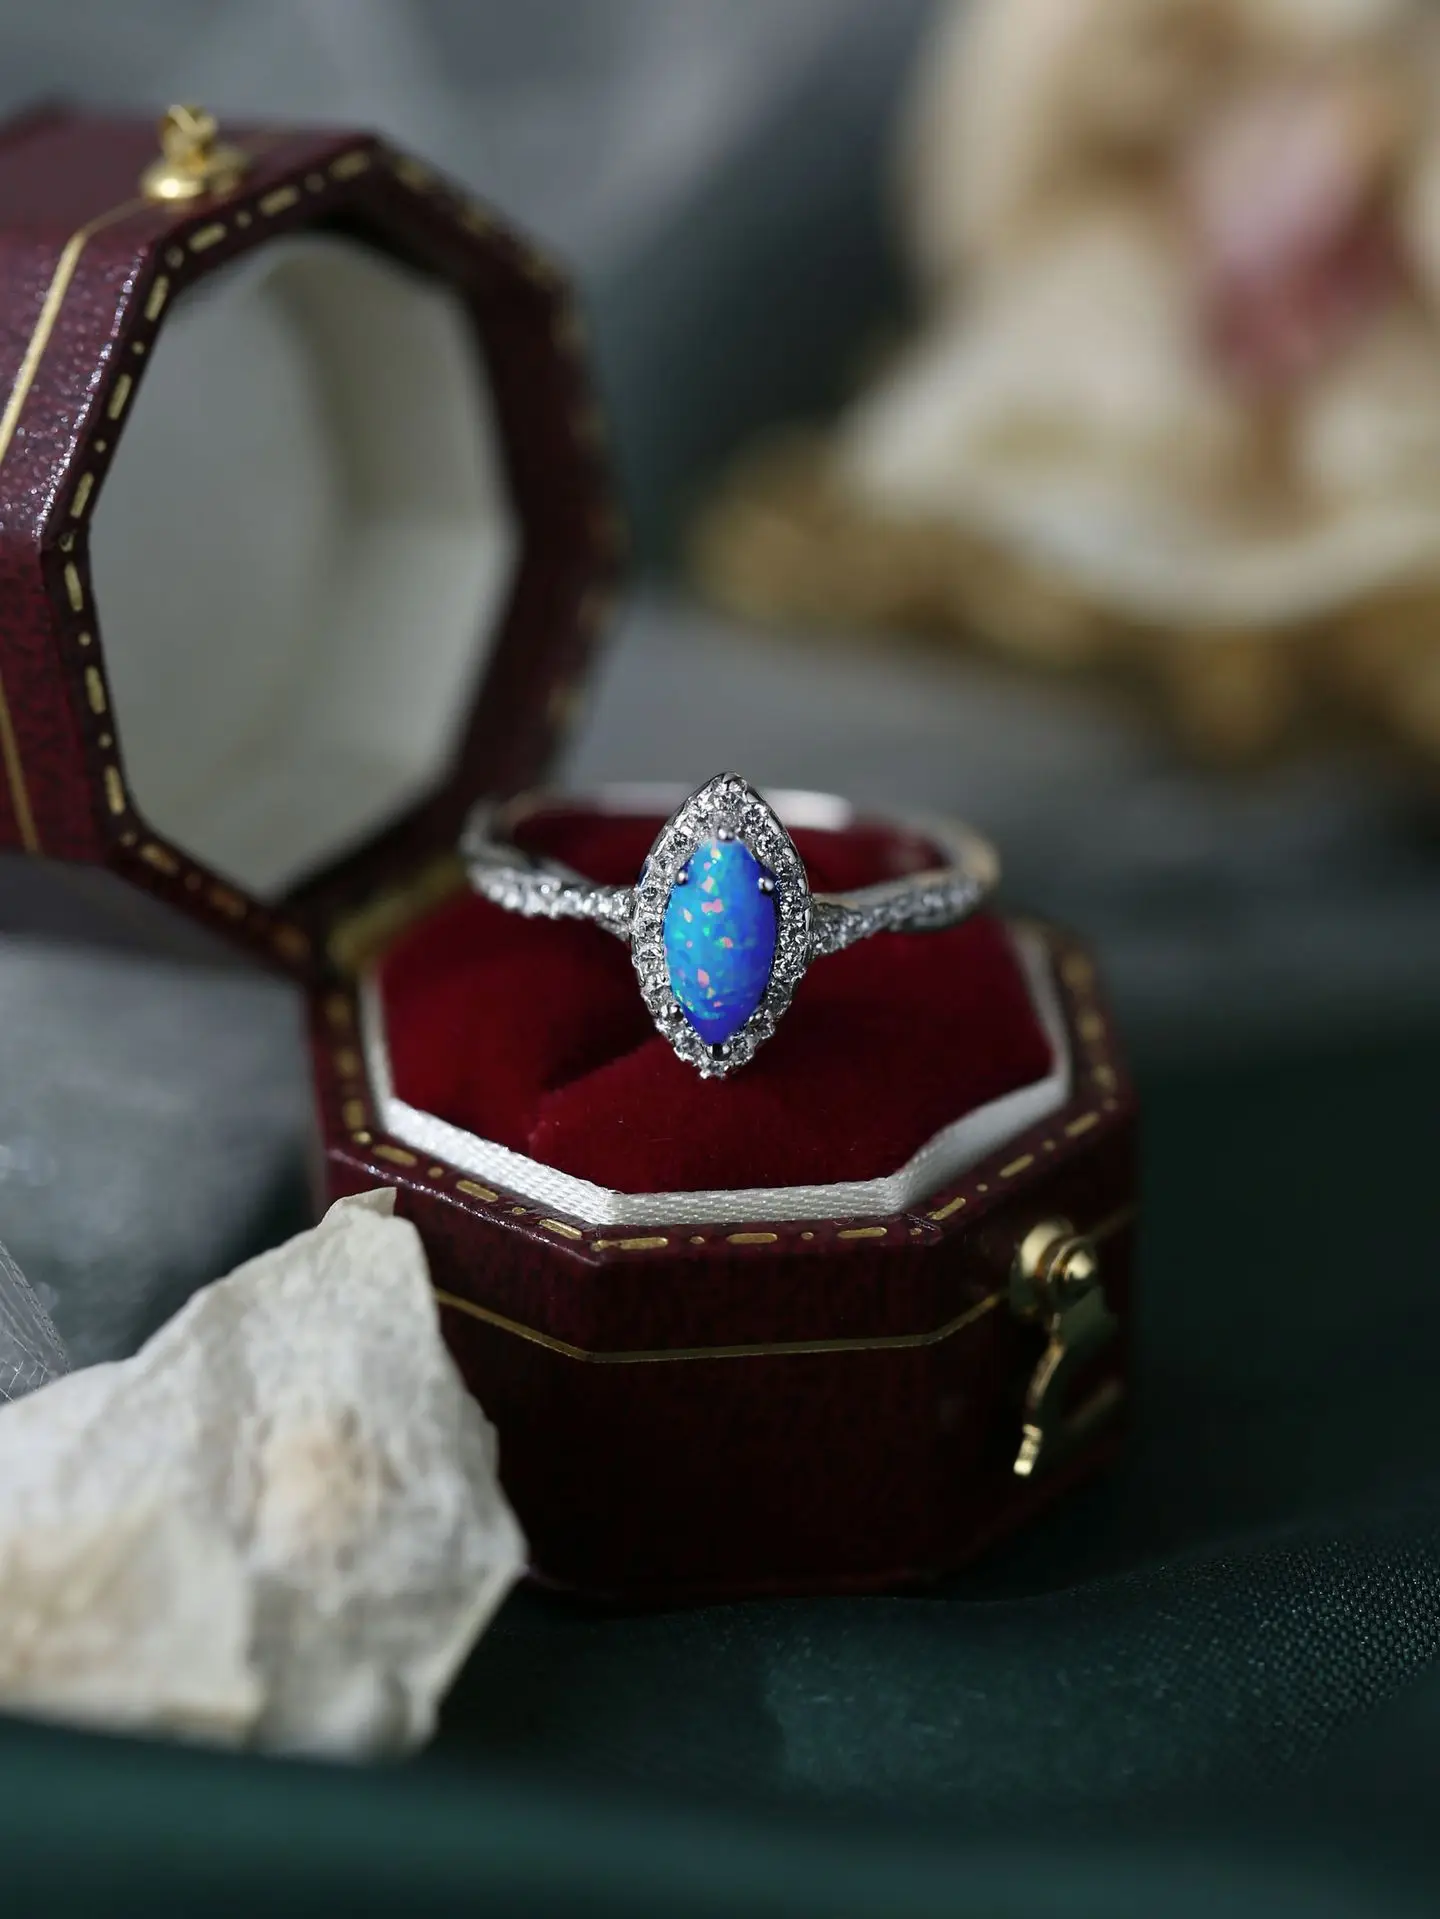 

Женское кольцо из чистого серебра 925 пробы, инкрустированное фианитом и голубым опалом, в изысканном элегантном стиле